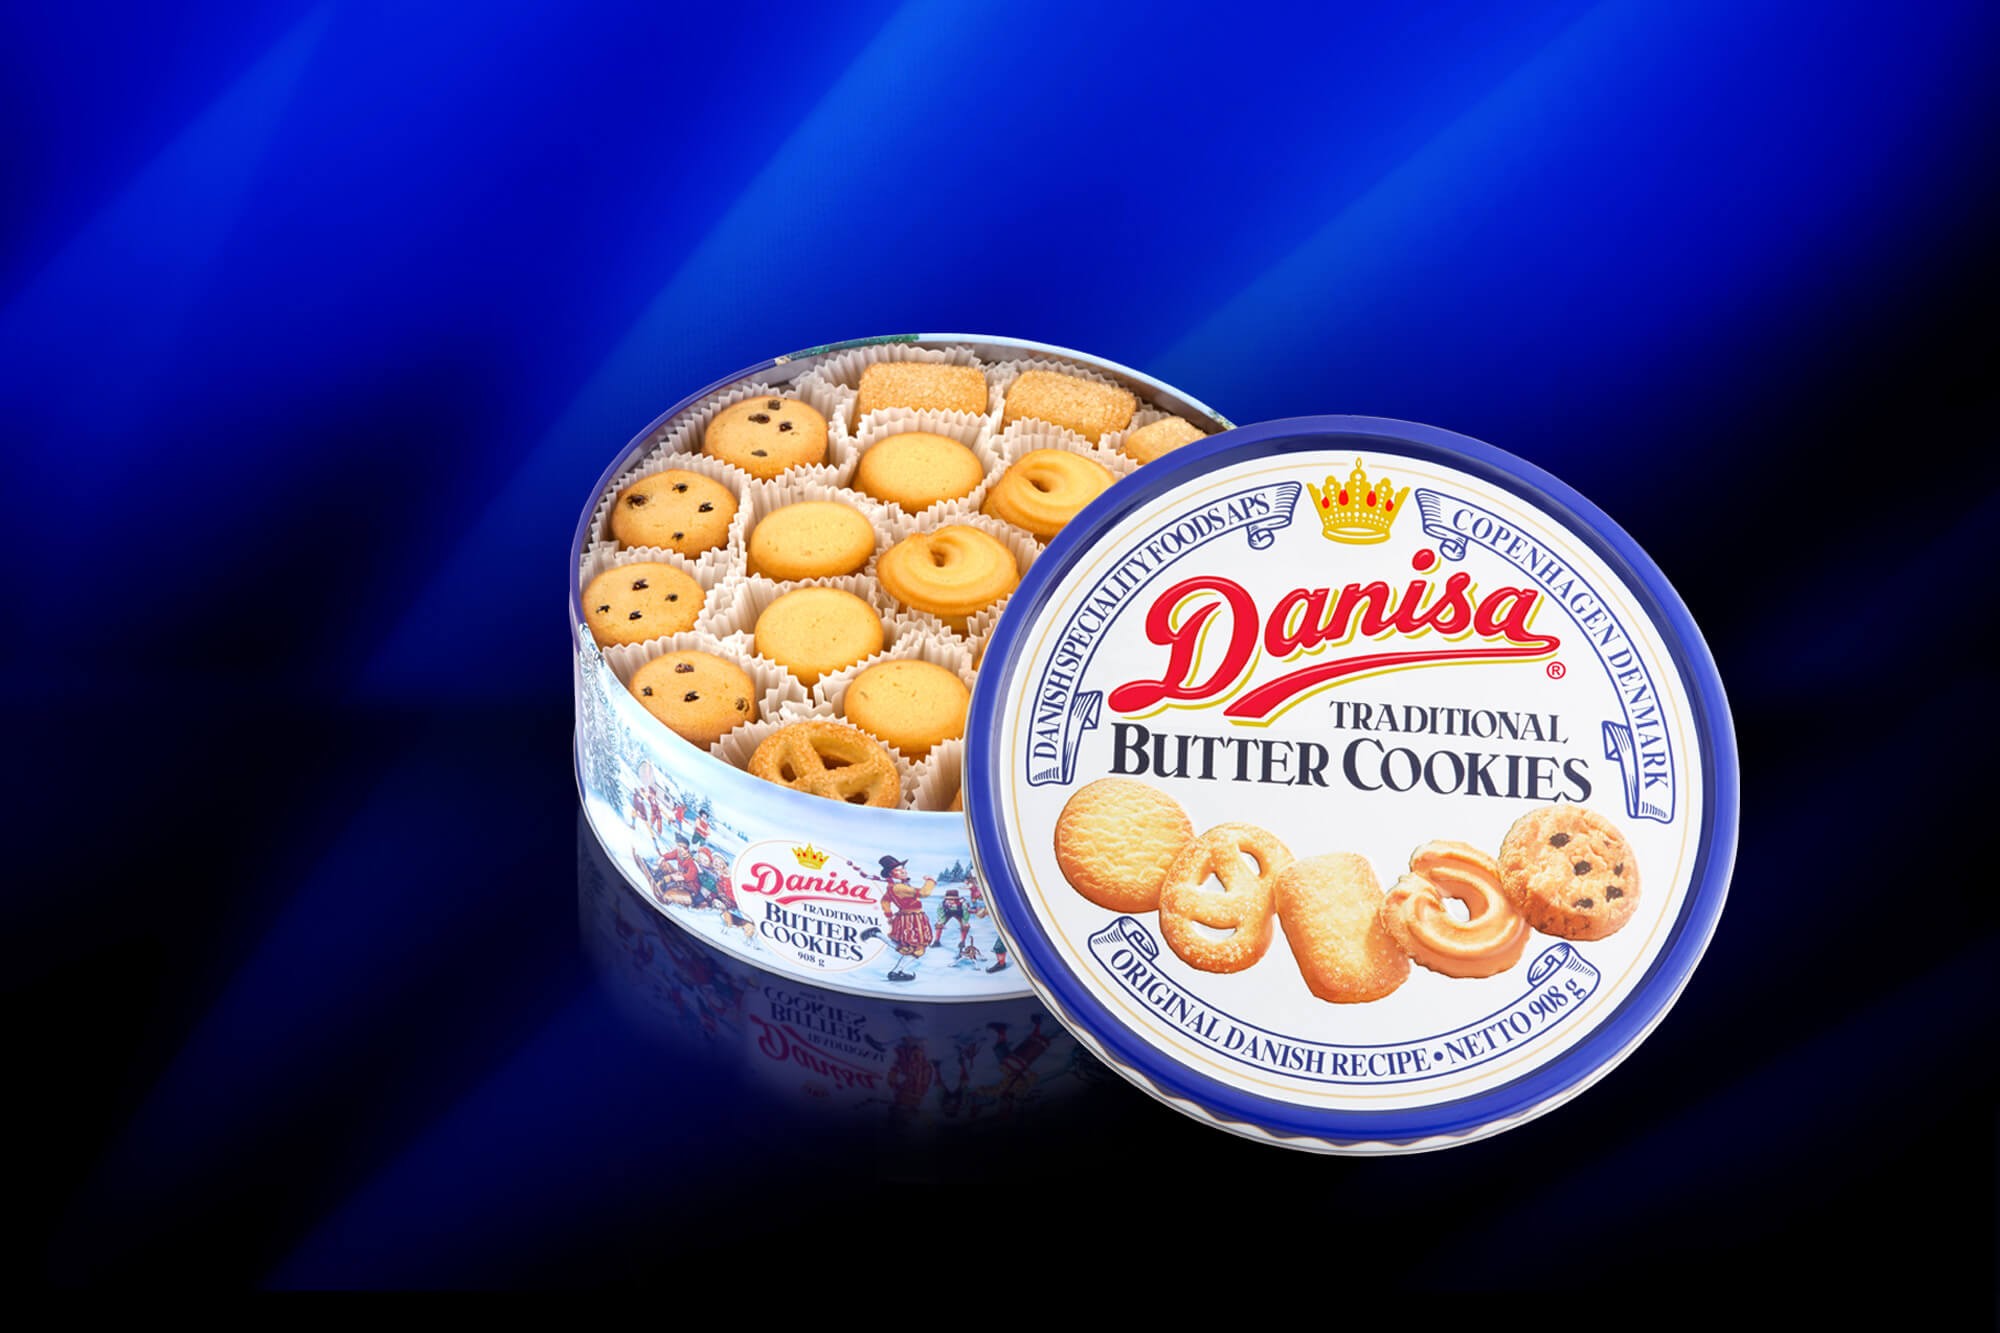 Butter roll cookie. Danisa печенье. Печенье Danish Butter cookies. Печенье Даниса баттер кукис. Danish Butter cookies изготовитель.